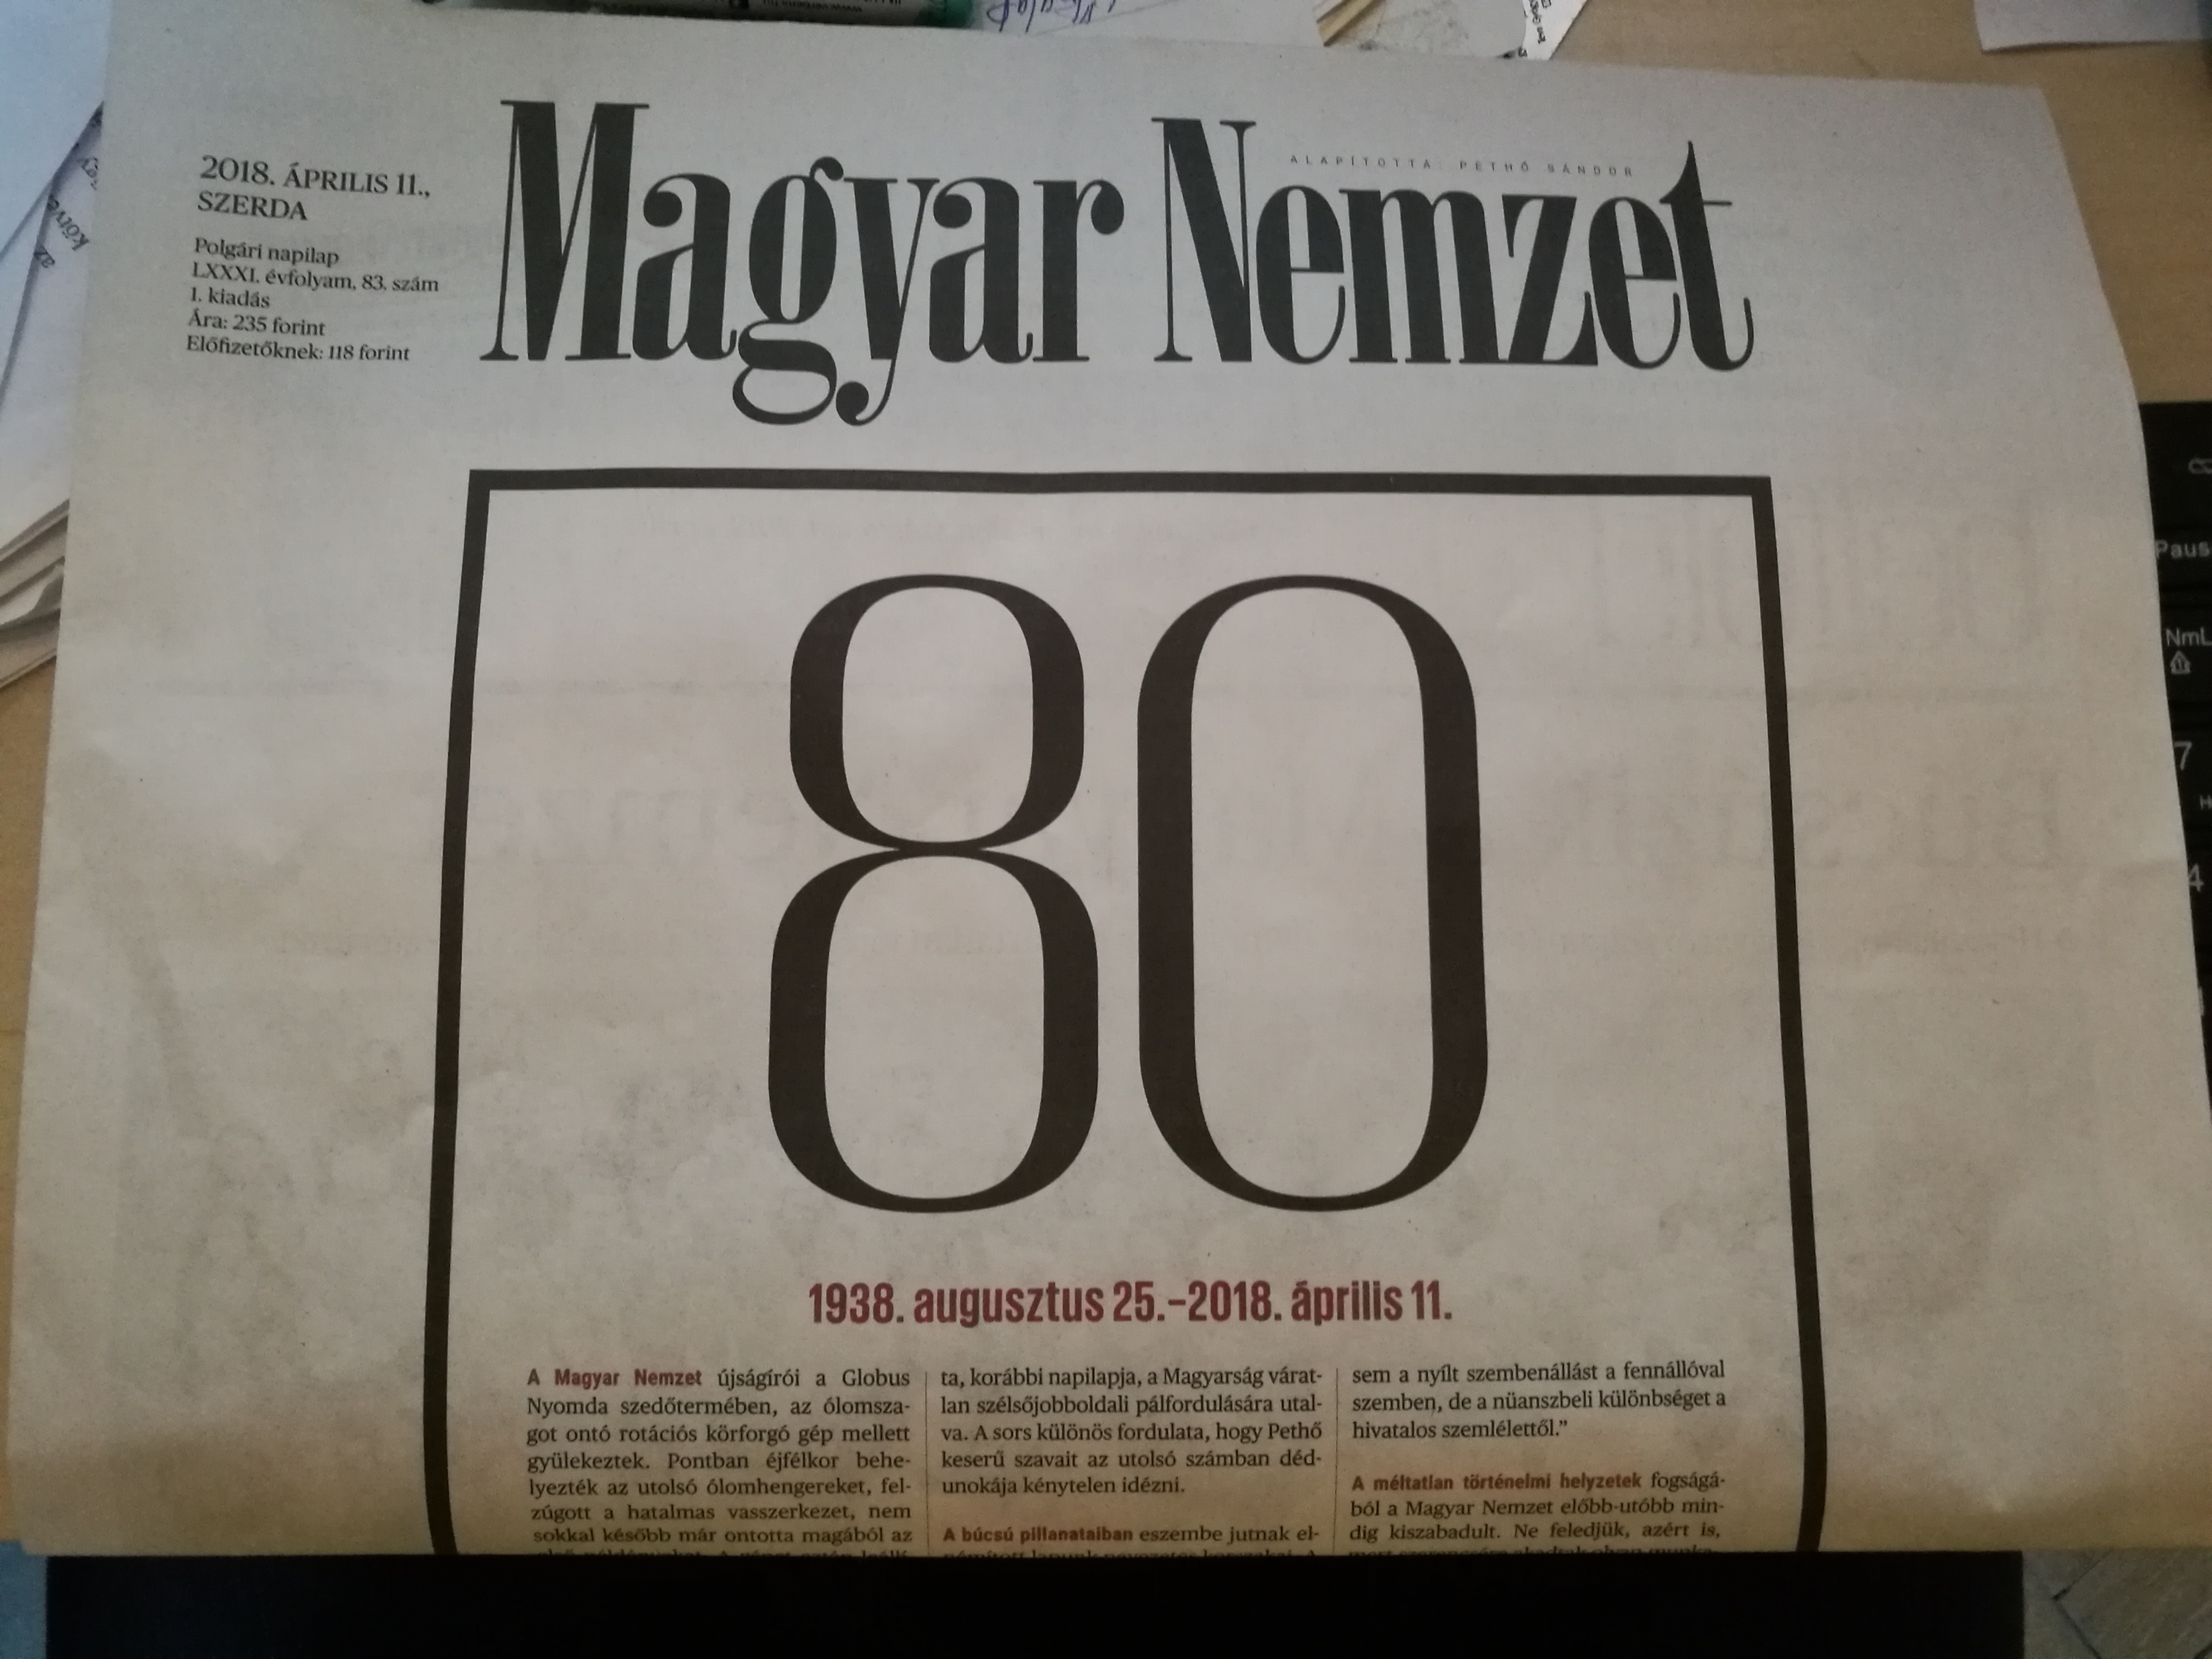 A nyilasok és a szovjetek után most a harmadik fideszes kétharmad némítja el a Magyar Nemzetet